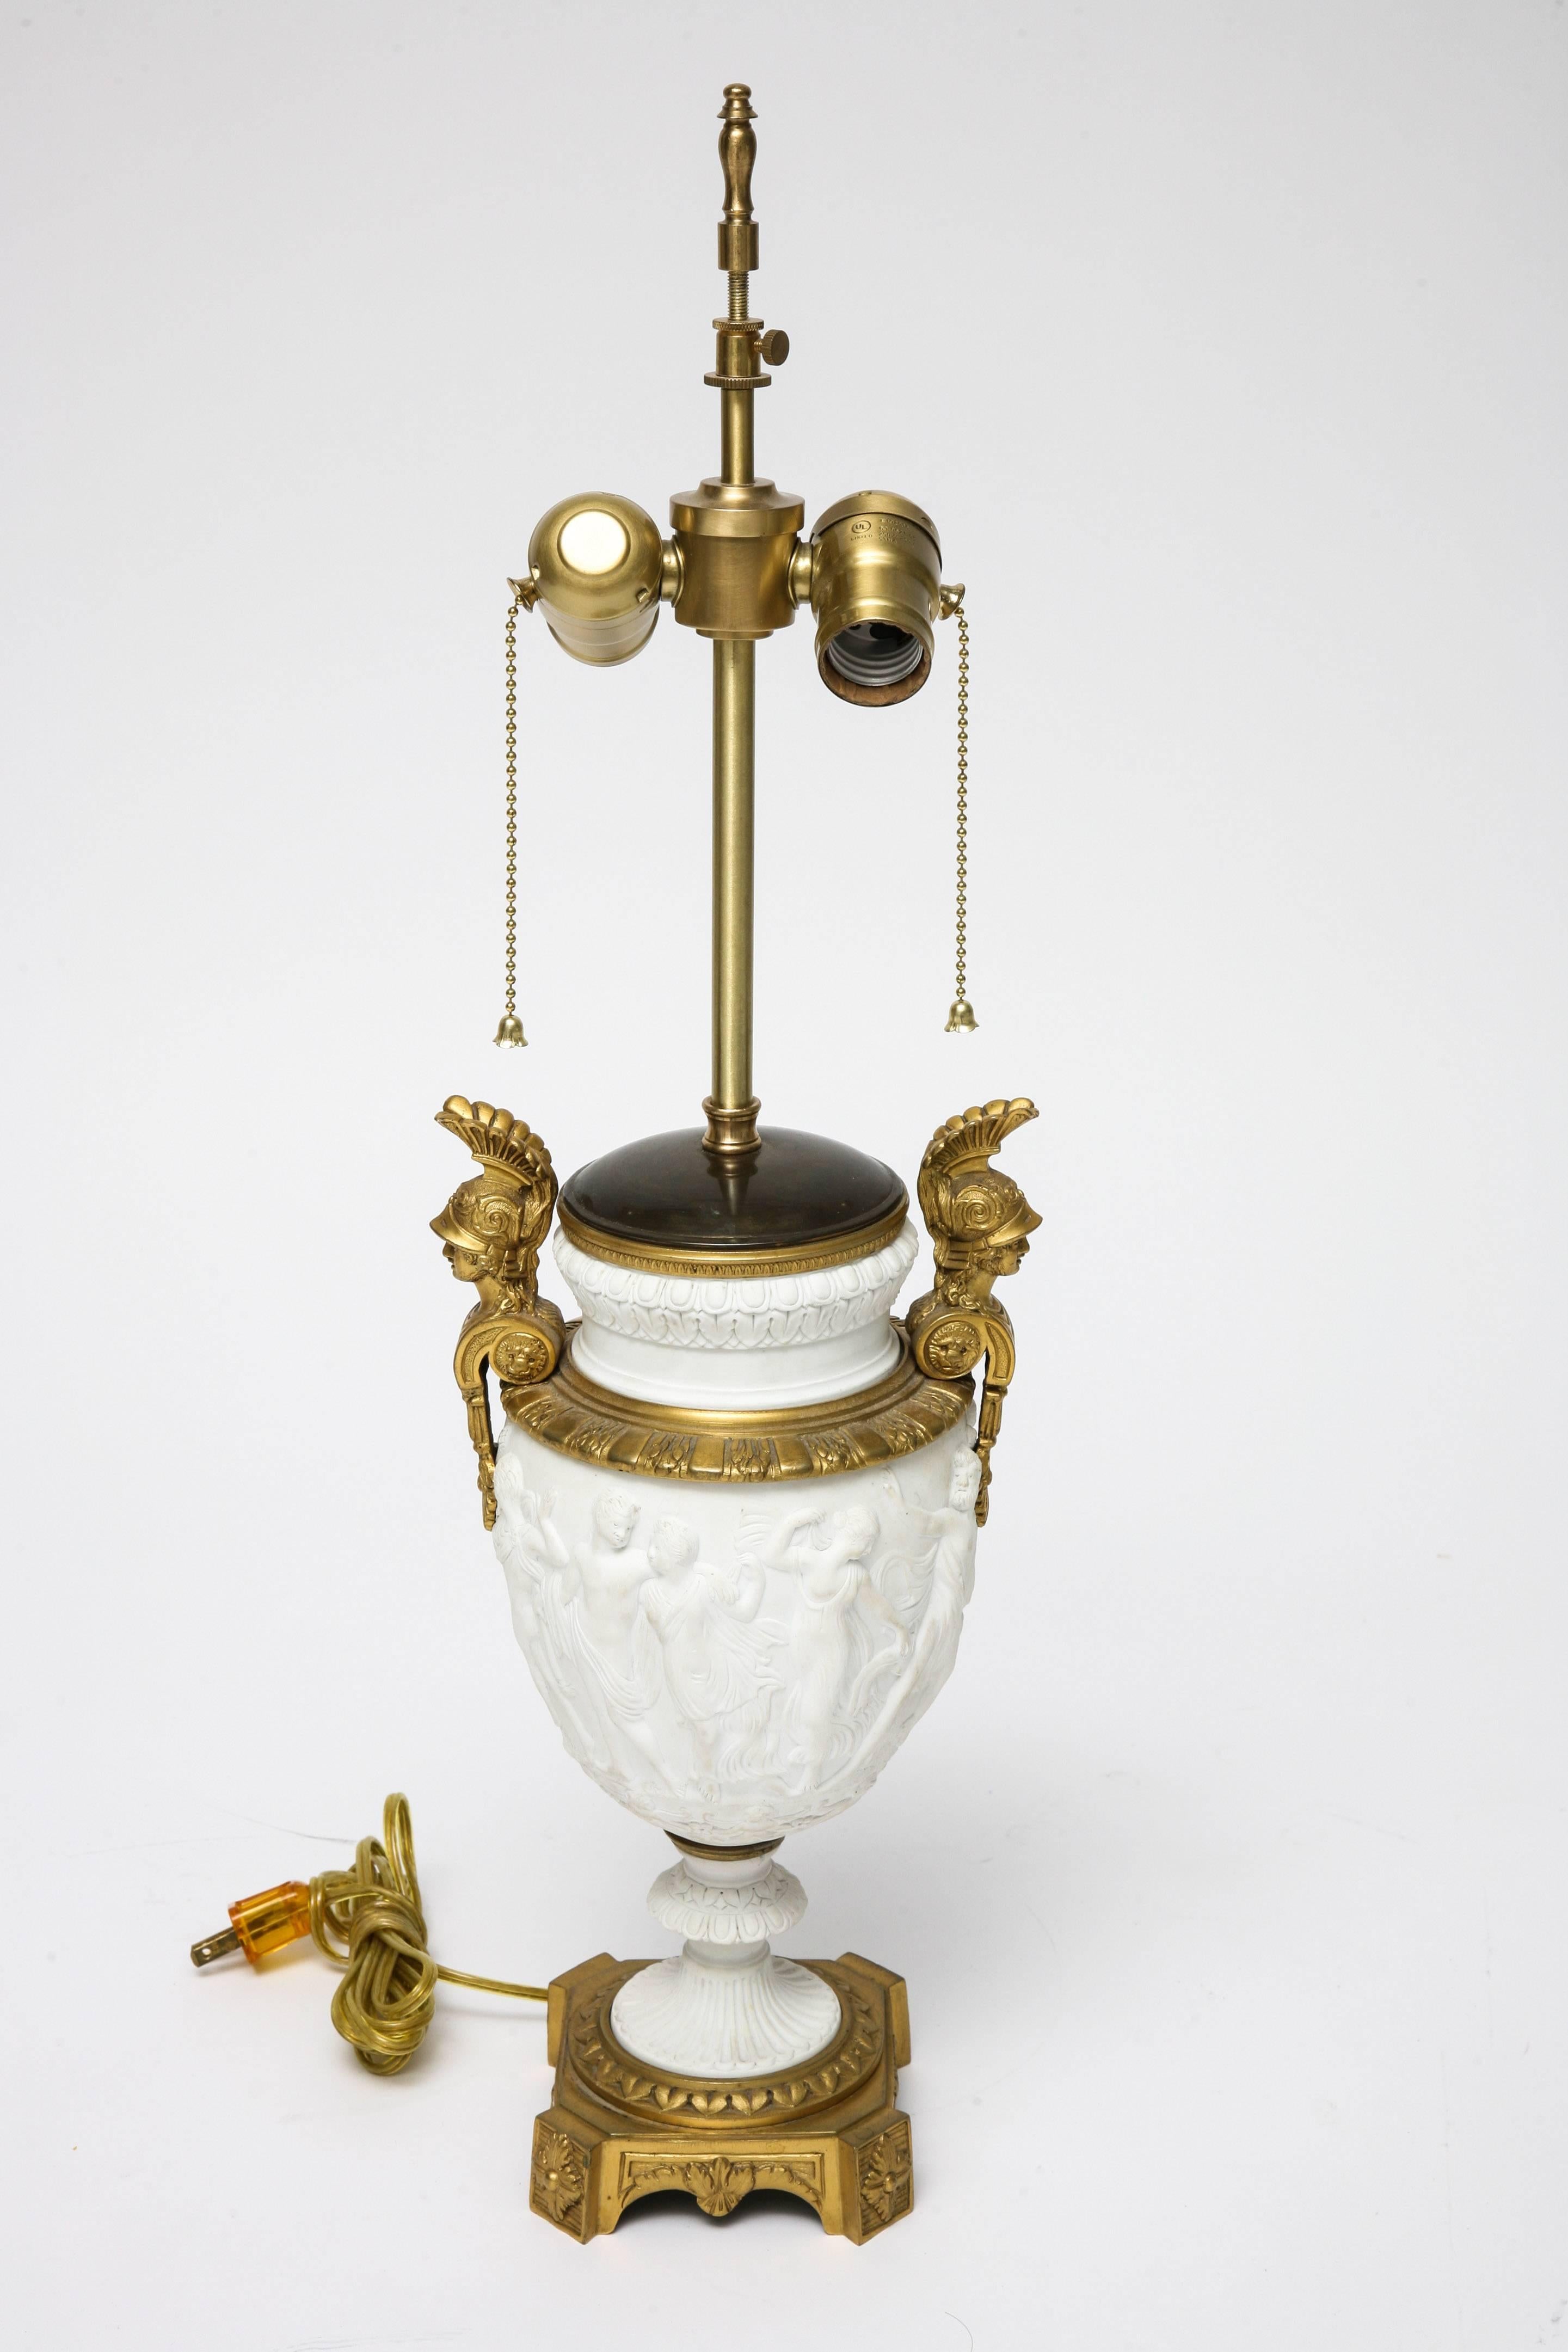 Cet élégant vase en biscuit de style Louis XVI de la fin du XIXe siècle avec des montures en bronze doré date d'environ 1880 et a été transformé en lampe de table. Cette pièce est magnifiquement détaillée avec des montures de déesses athéniennes en